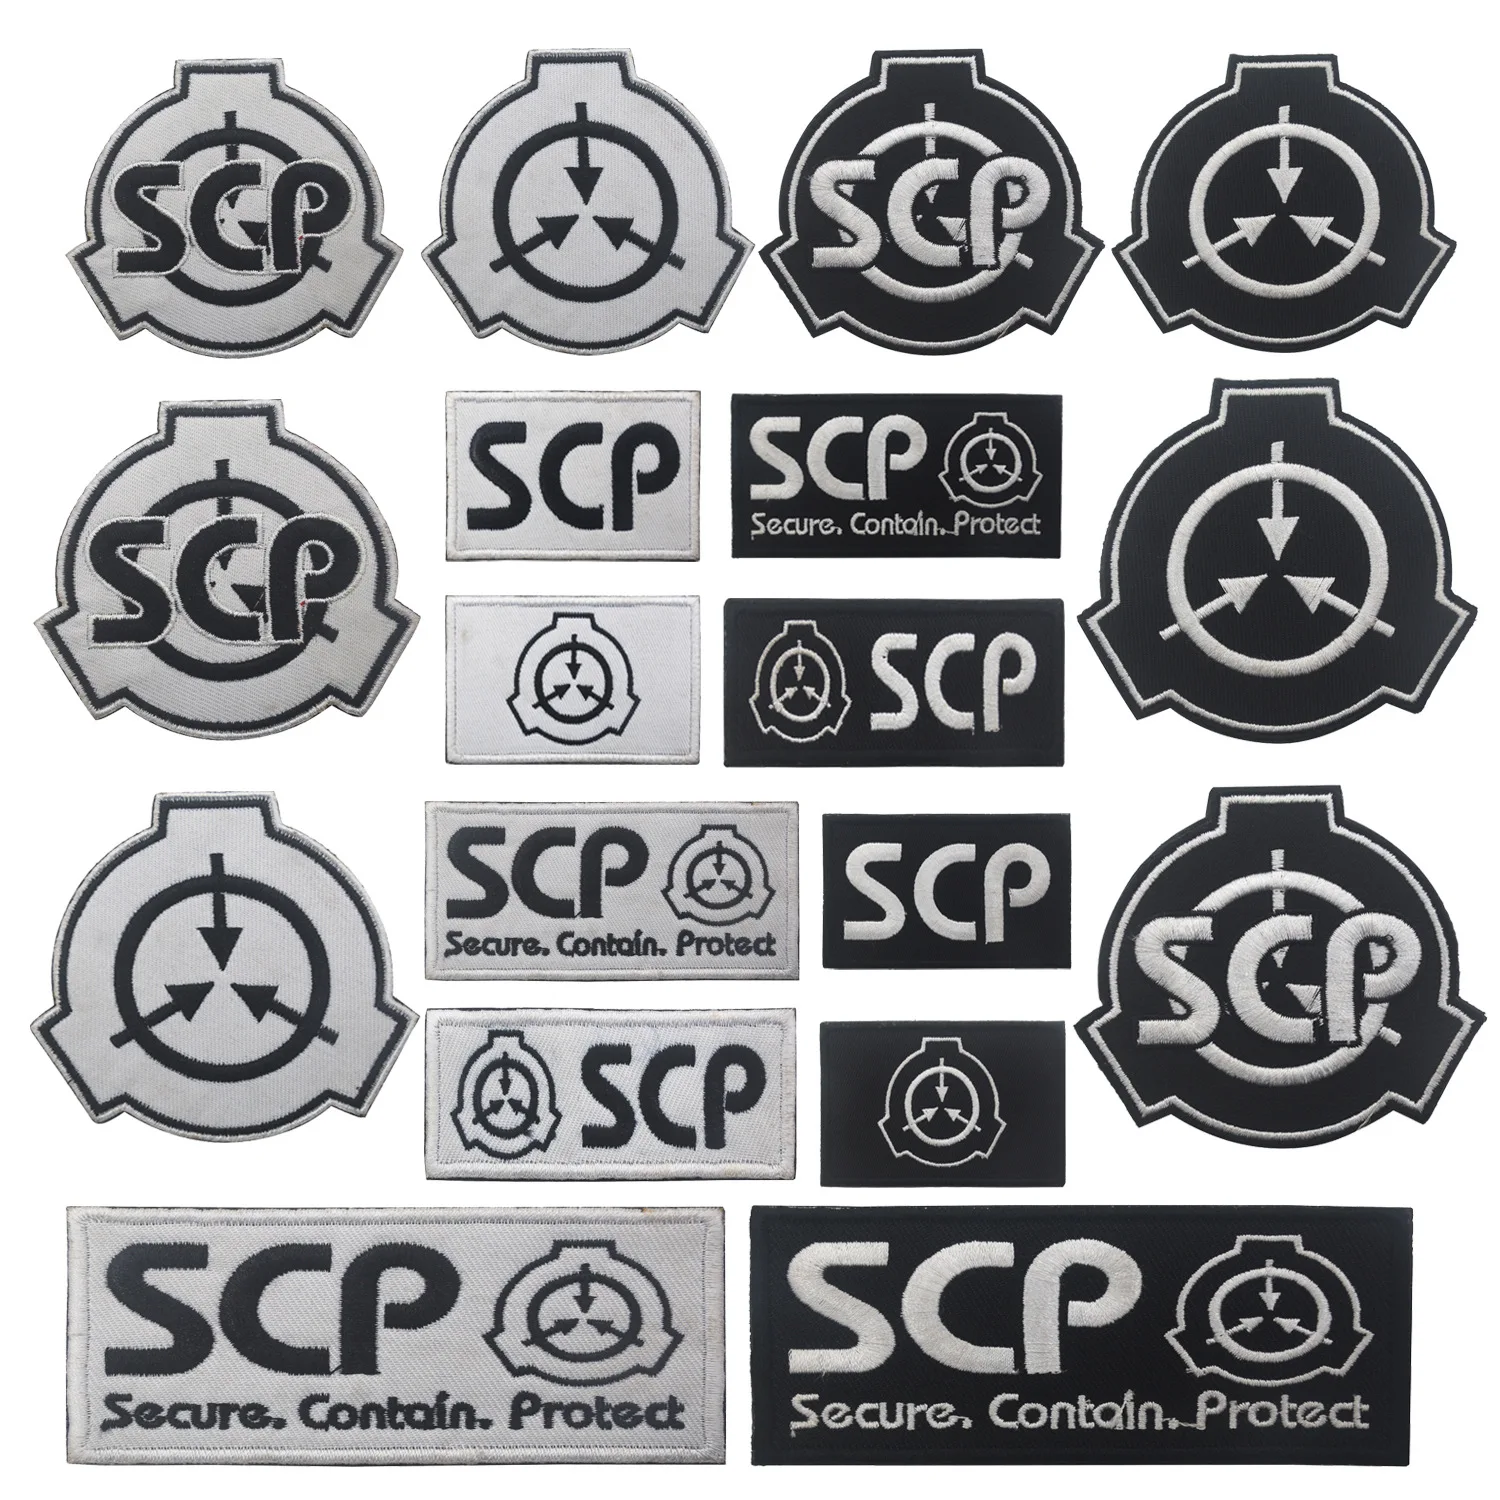 Логотип SCP Foundation, вышивка, нашивки с крючками и петлями для одежды, наклейка на тактический жилет SCP, значки, нашивка на руку с надписью Nature Love